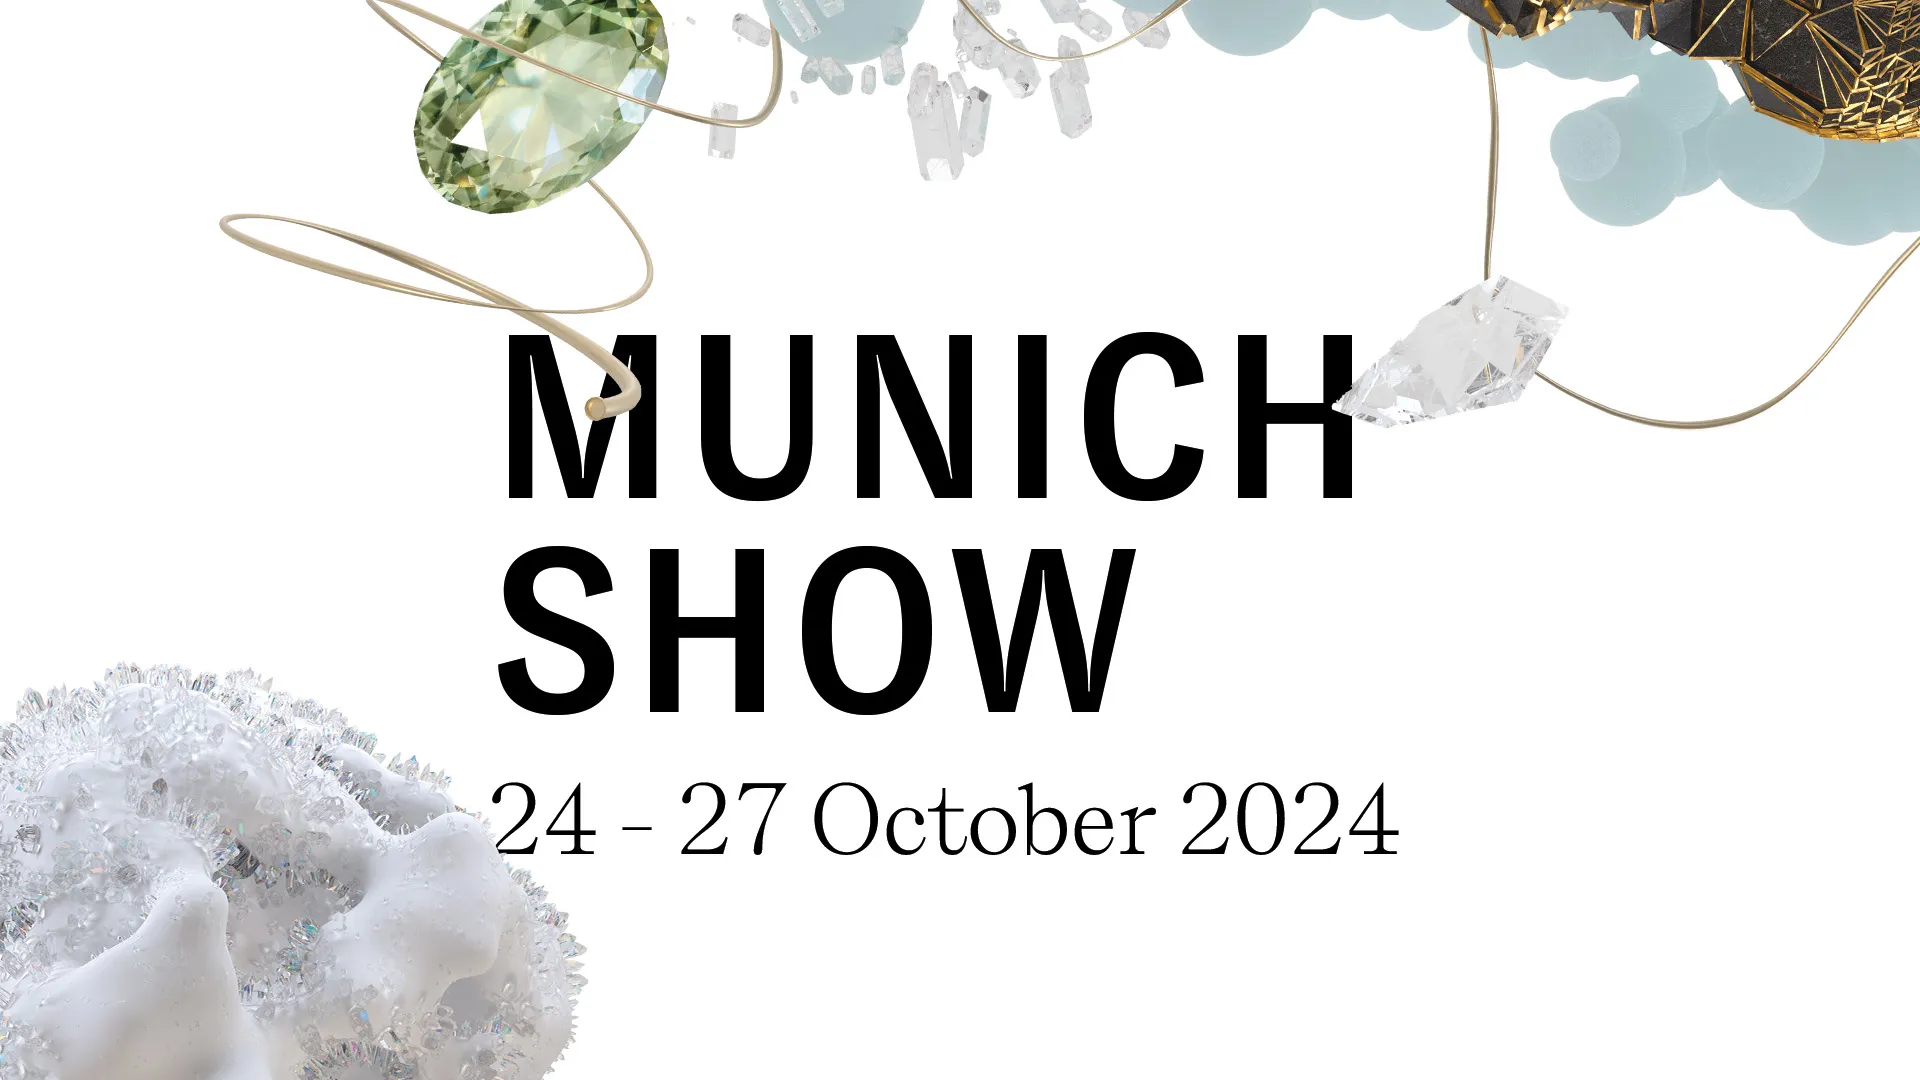 The Munich Show